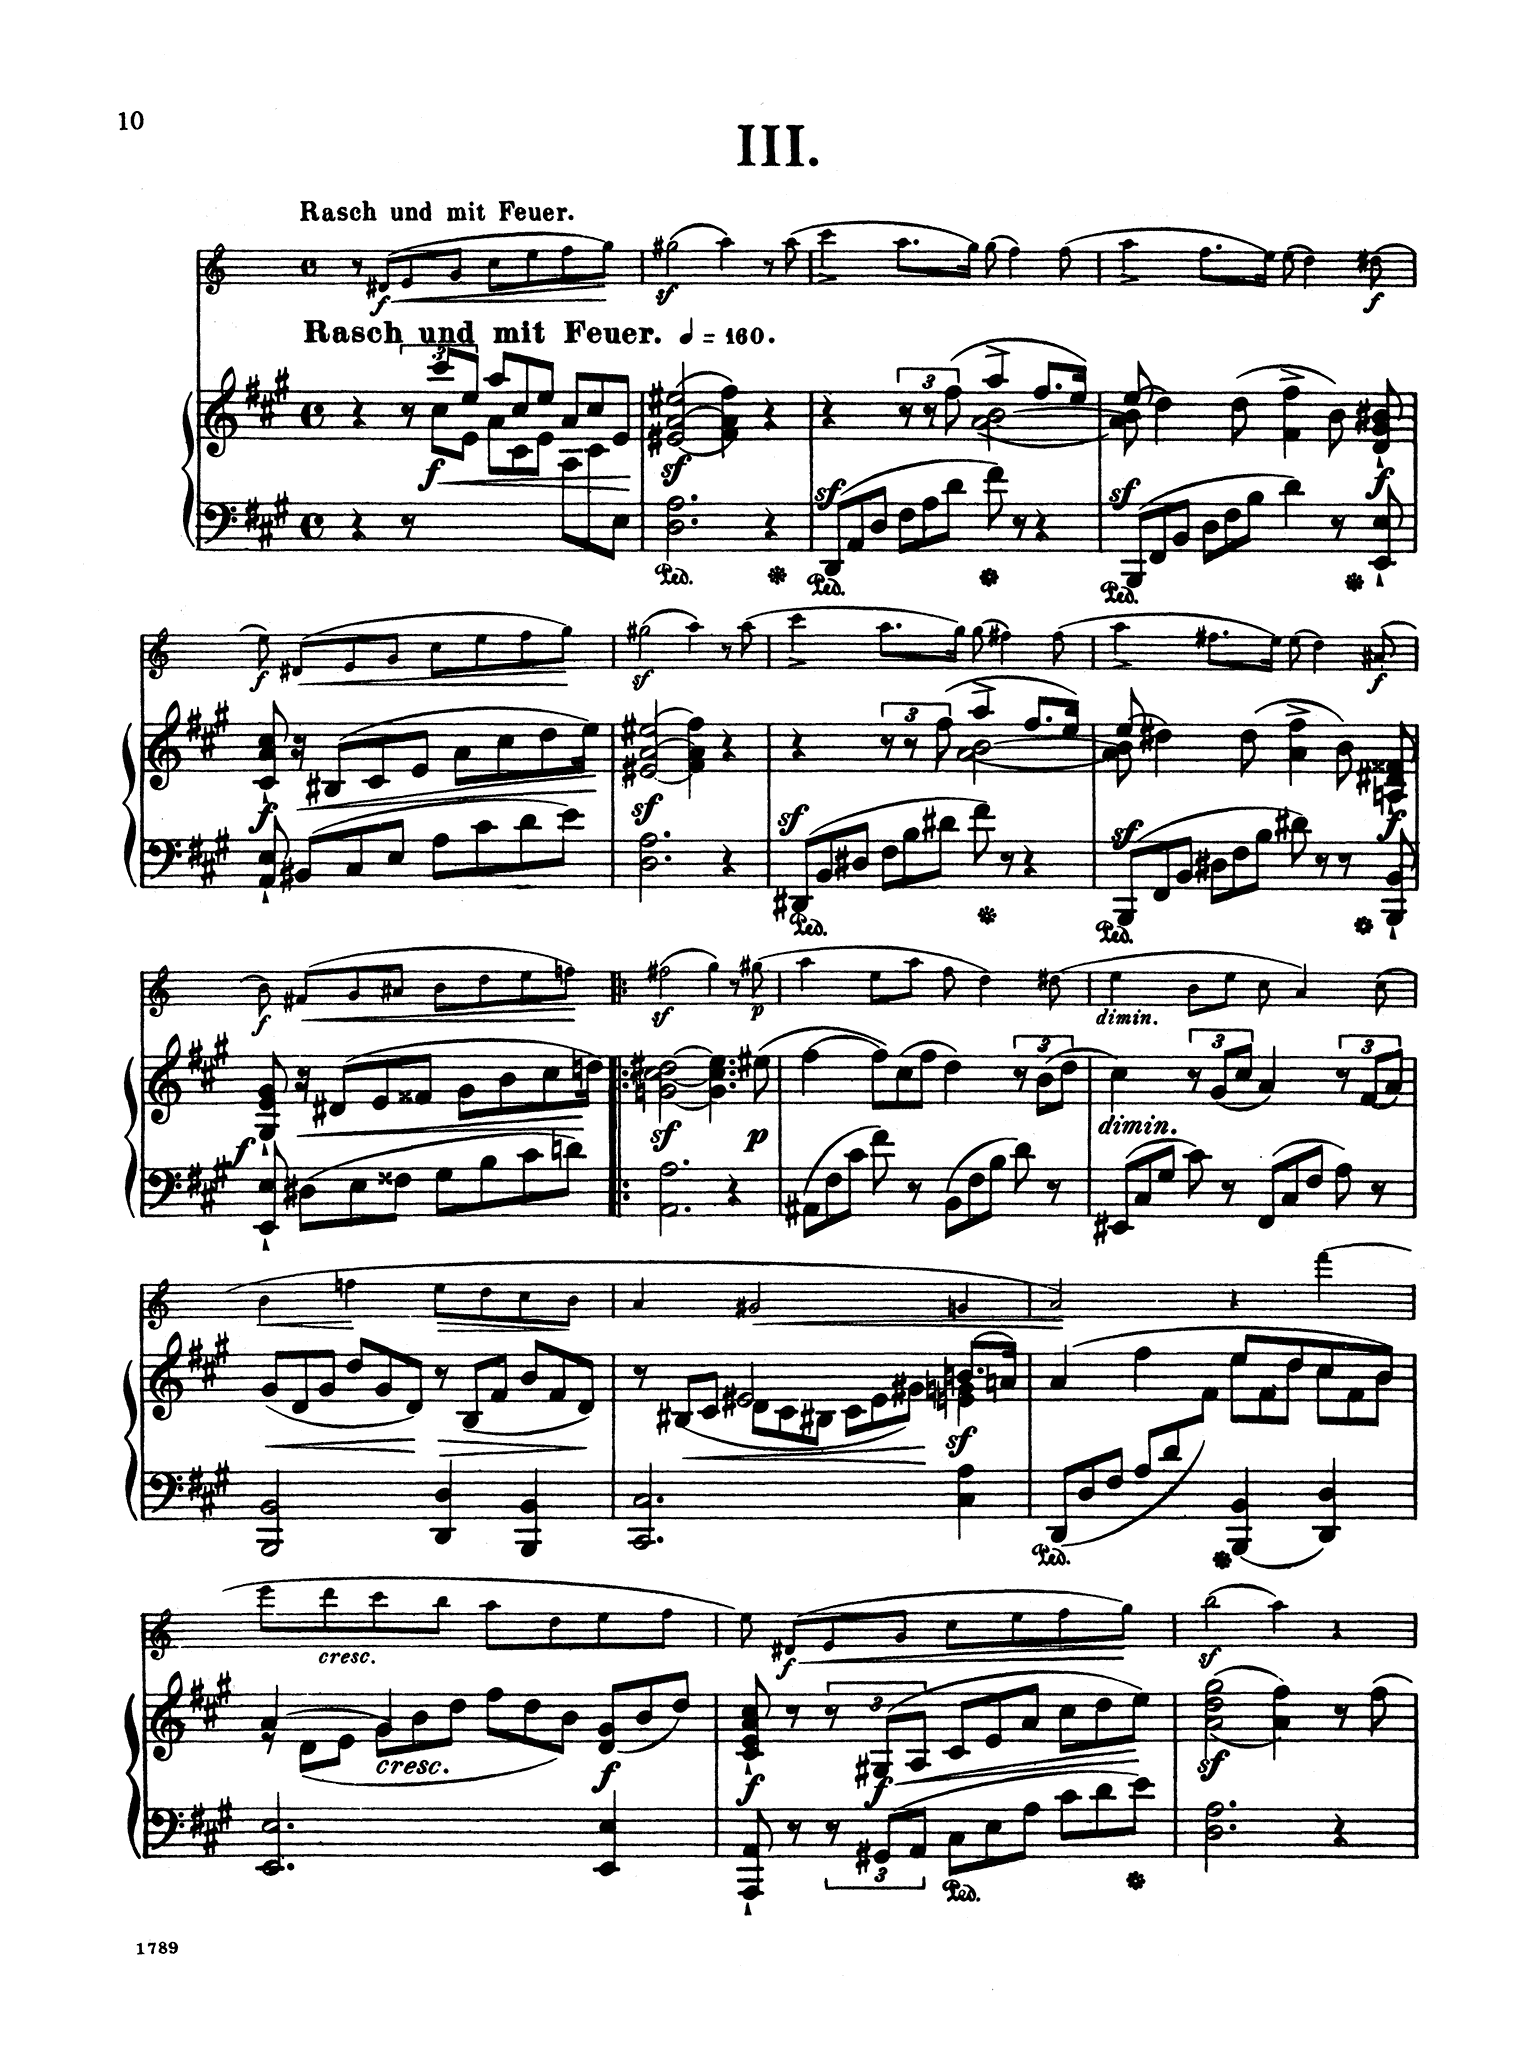 Fantasiestücke, Op. 73 - Movement 3